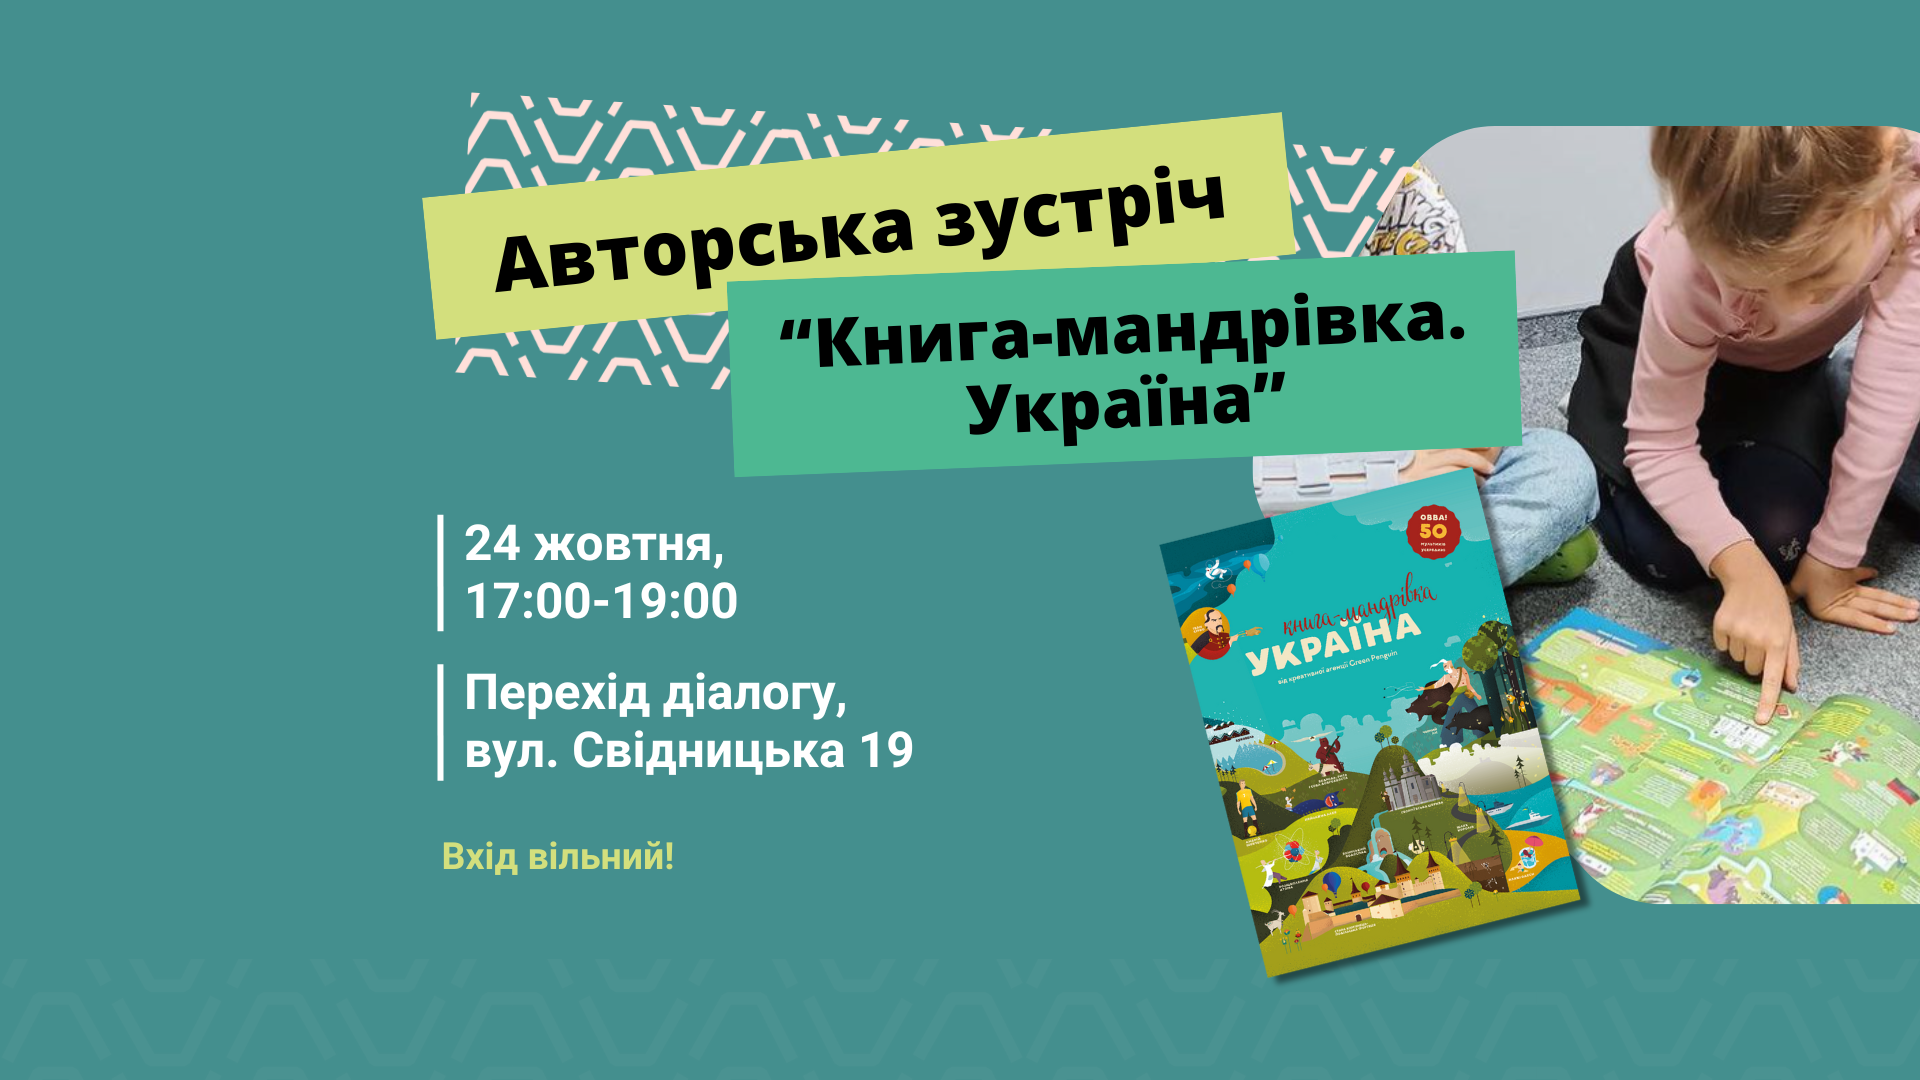 Prezentacja ukraińskiej książki w Przejście Dialogu!